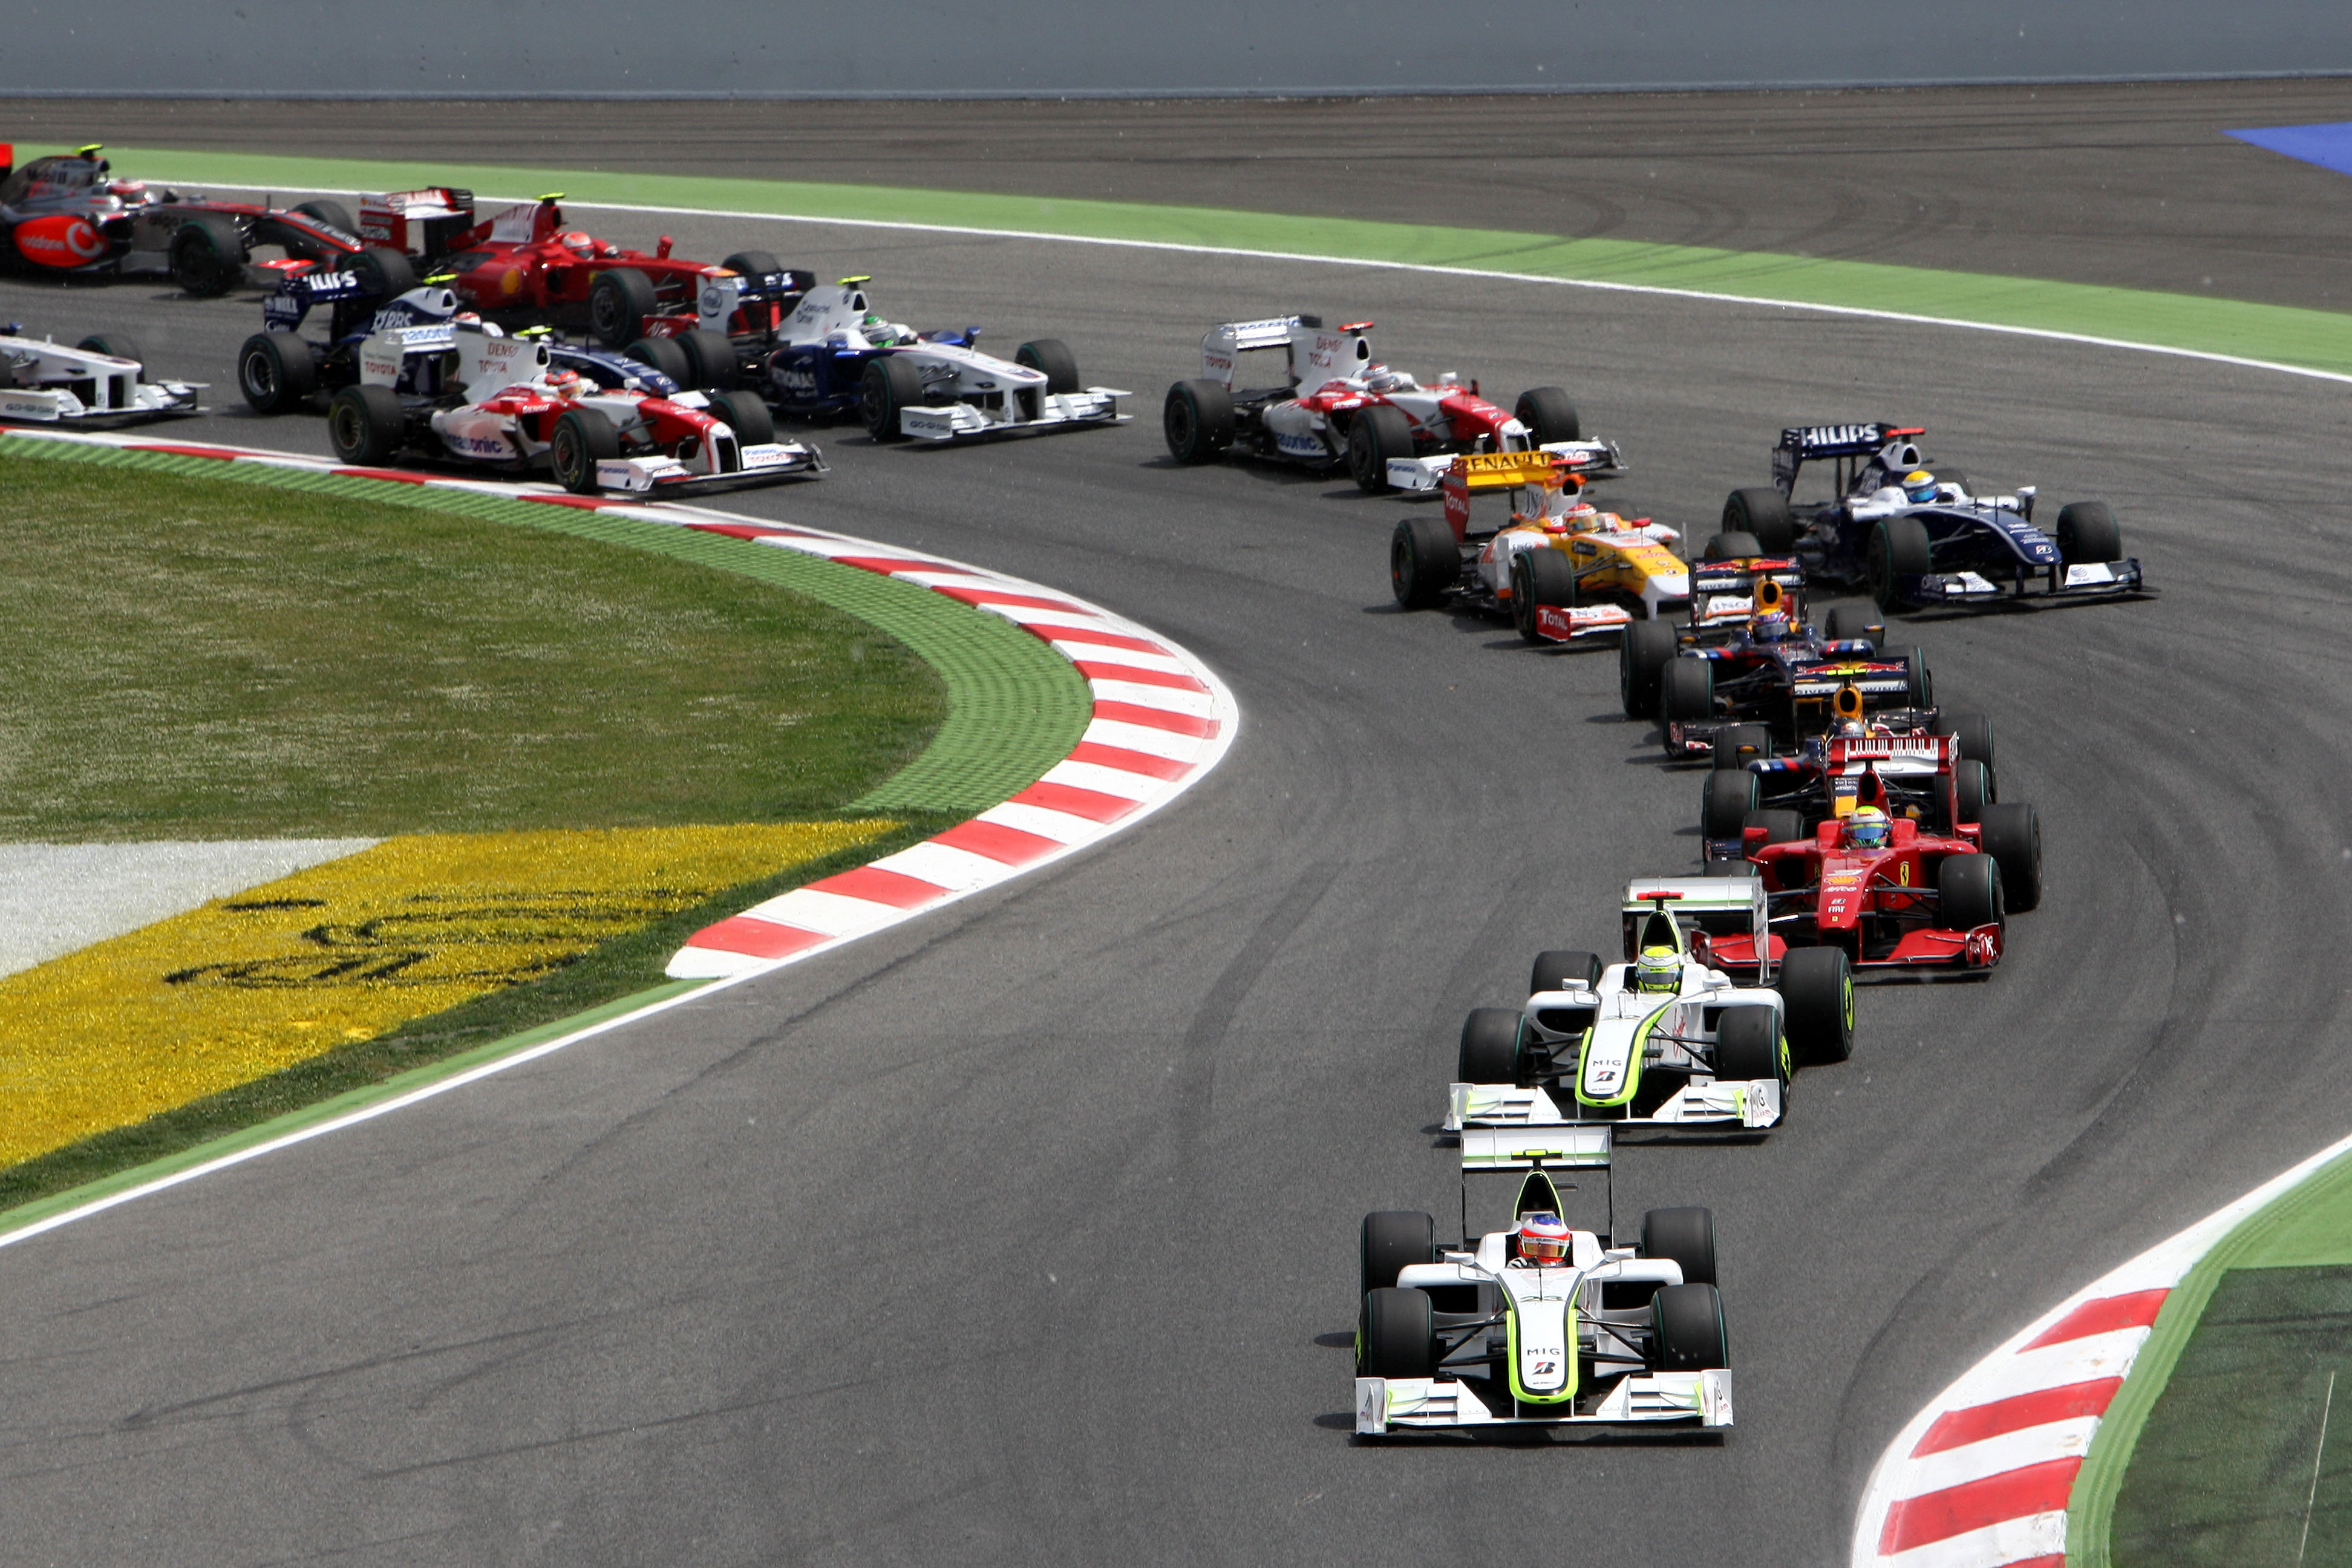 Grand Prix de Formule 1, Espagne, course du dimanche